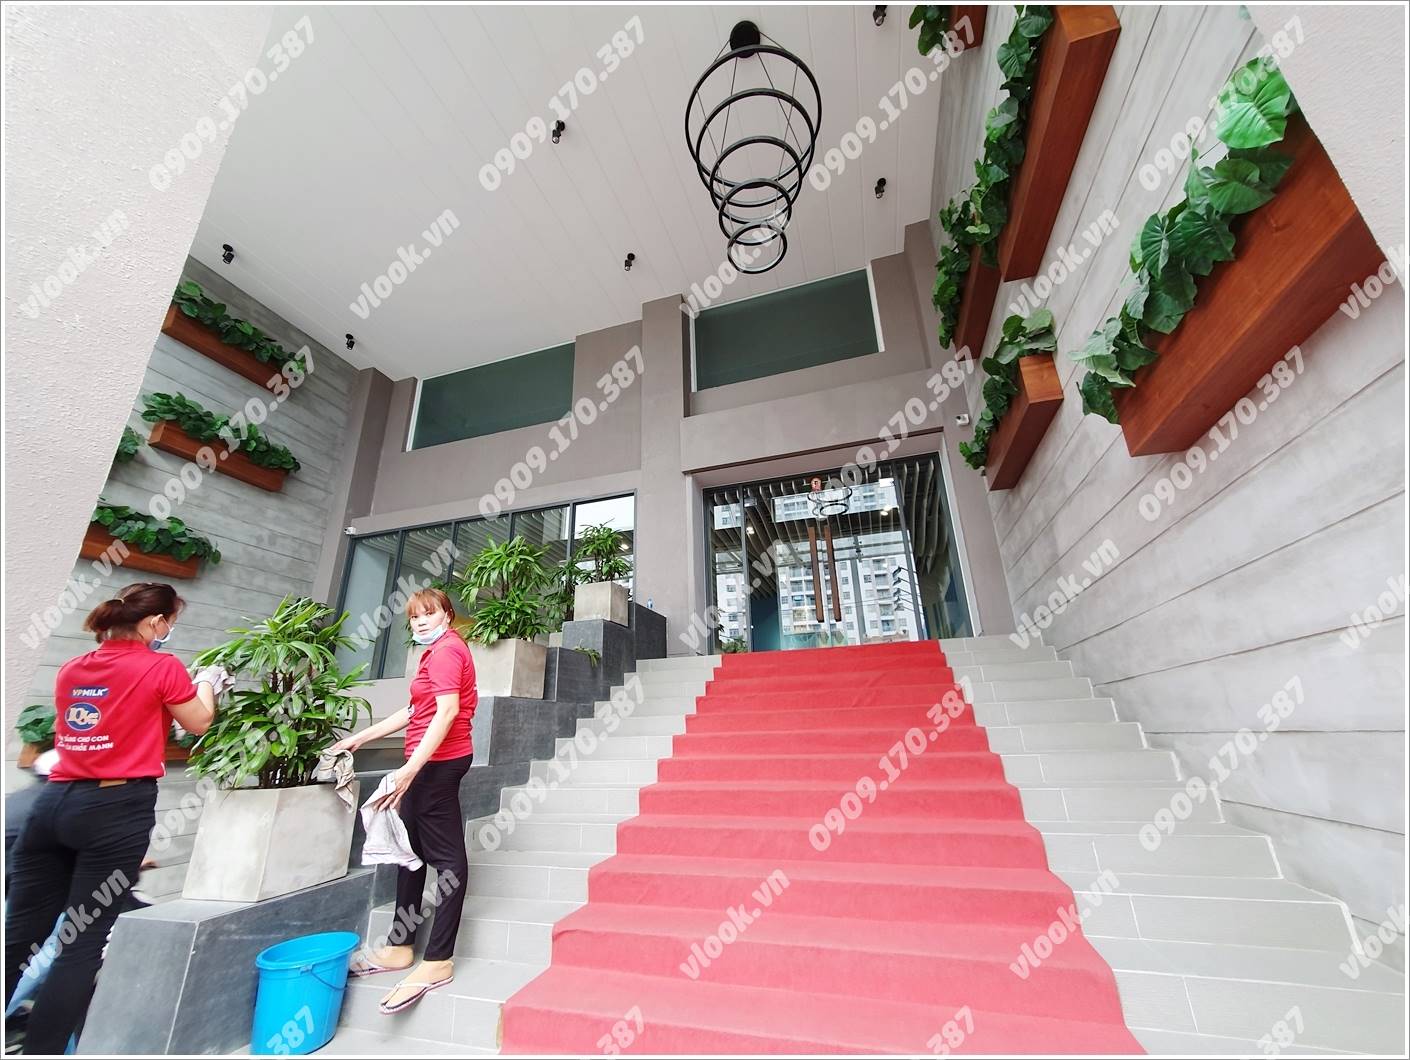 Mặt trước toàn cảnh oà cao ốc văn phòng cho thuê VPMilk Building, đường Nguyễn Thị Thập, quận 7, TP.HCM - vlook.vn